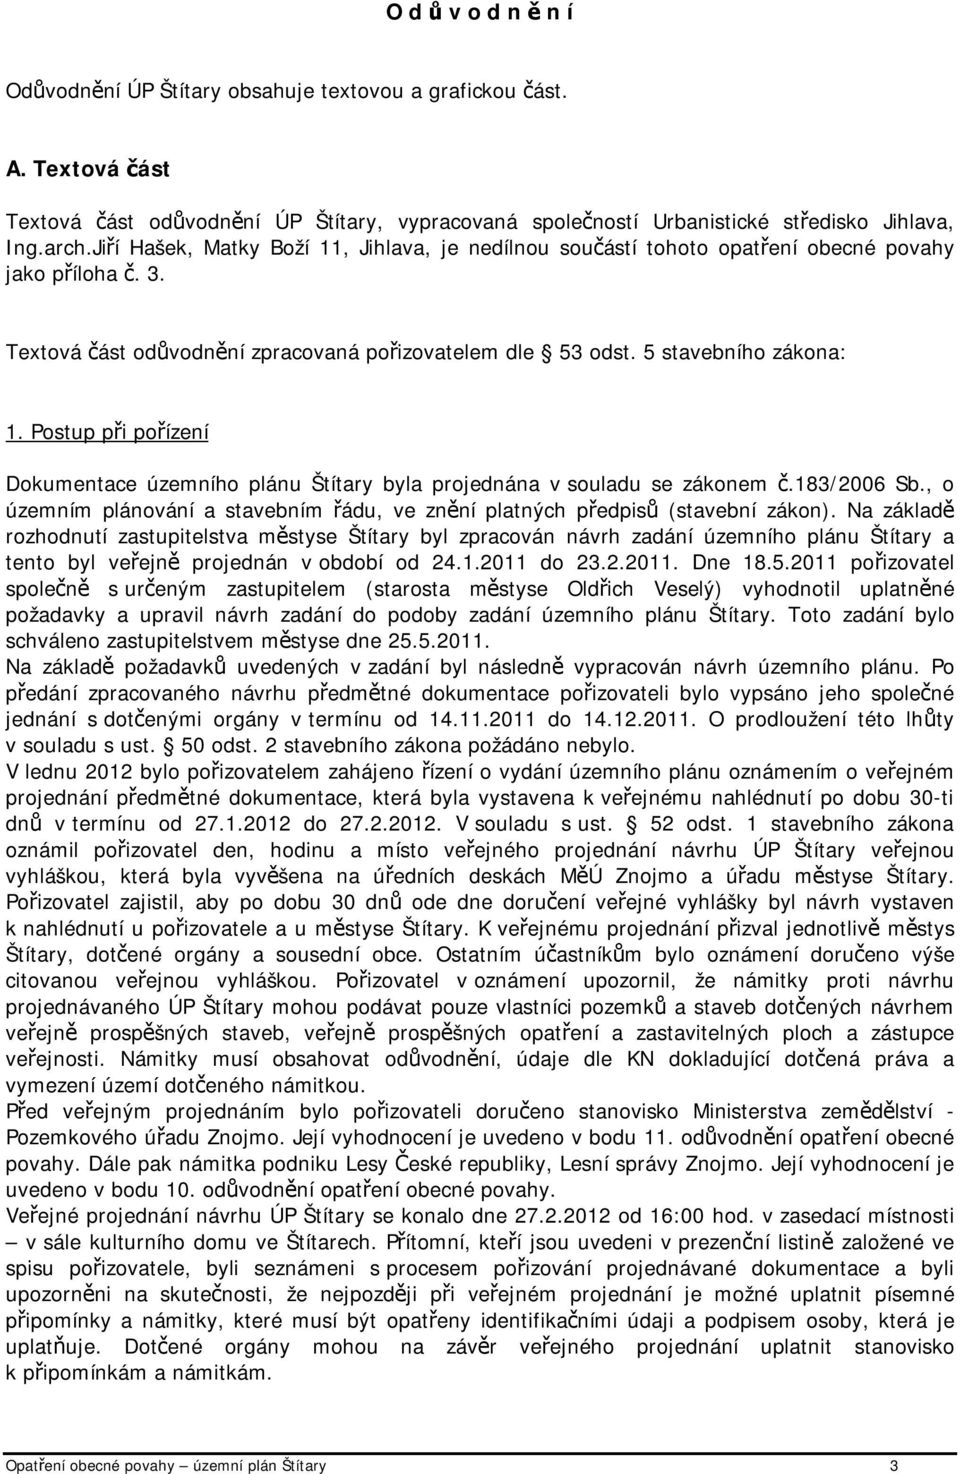 Postup při pořízení Dokumentace územního plánu Štítary byla projednána v souladu se zákonem č.183/2006 Sb., o územním plánování a stavebním řádu, ve znění platných předpisů (stavební zákon).